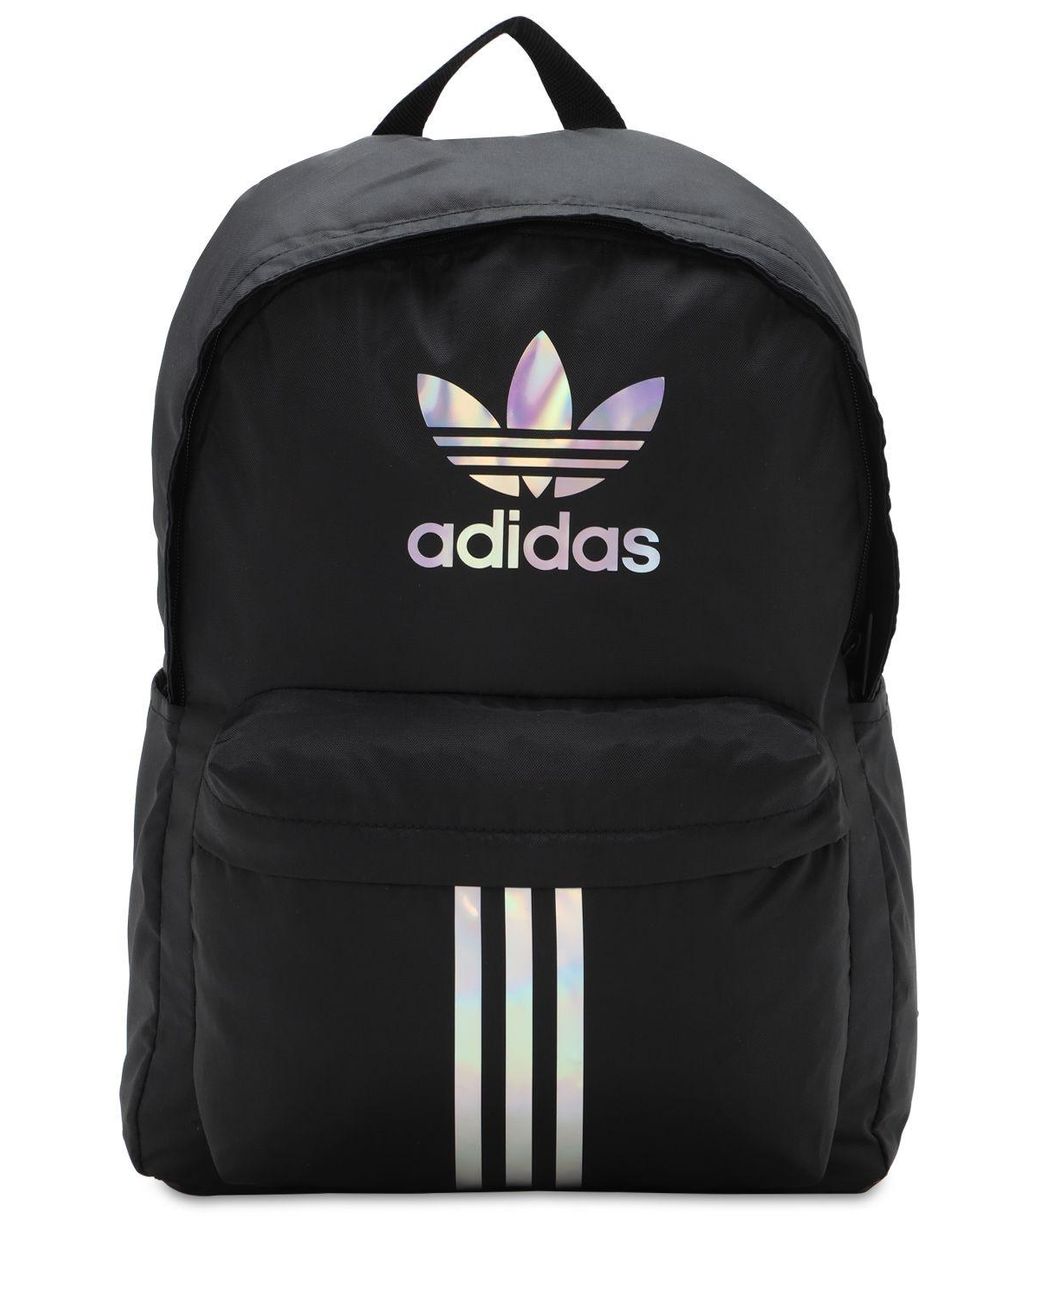 adidas Originals Adicolor Classic Backpack in Black | Lyst